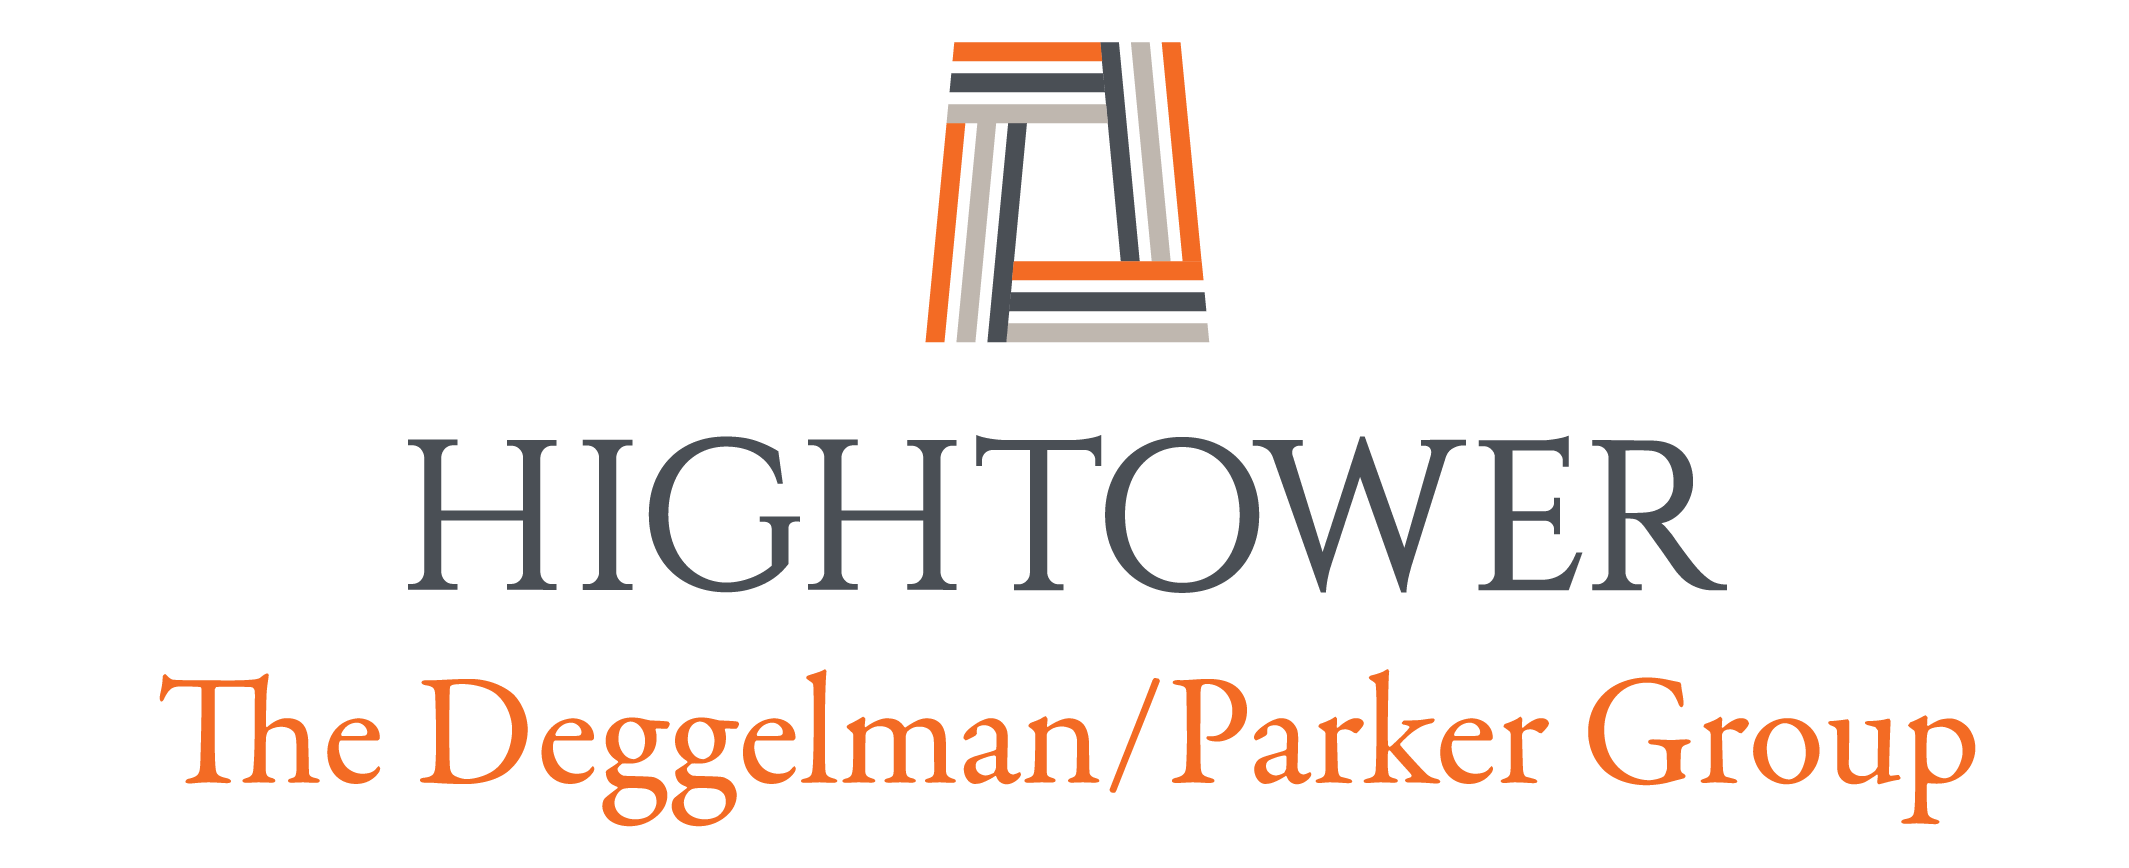 The Deggelman/Parker Group Logo